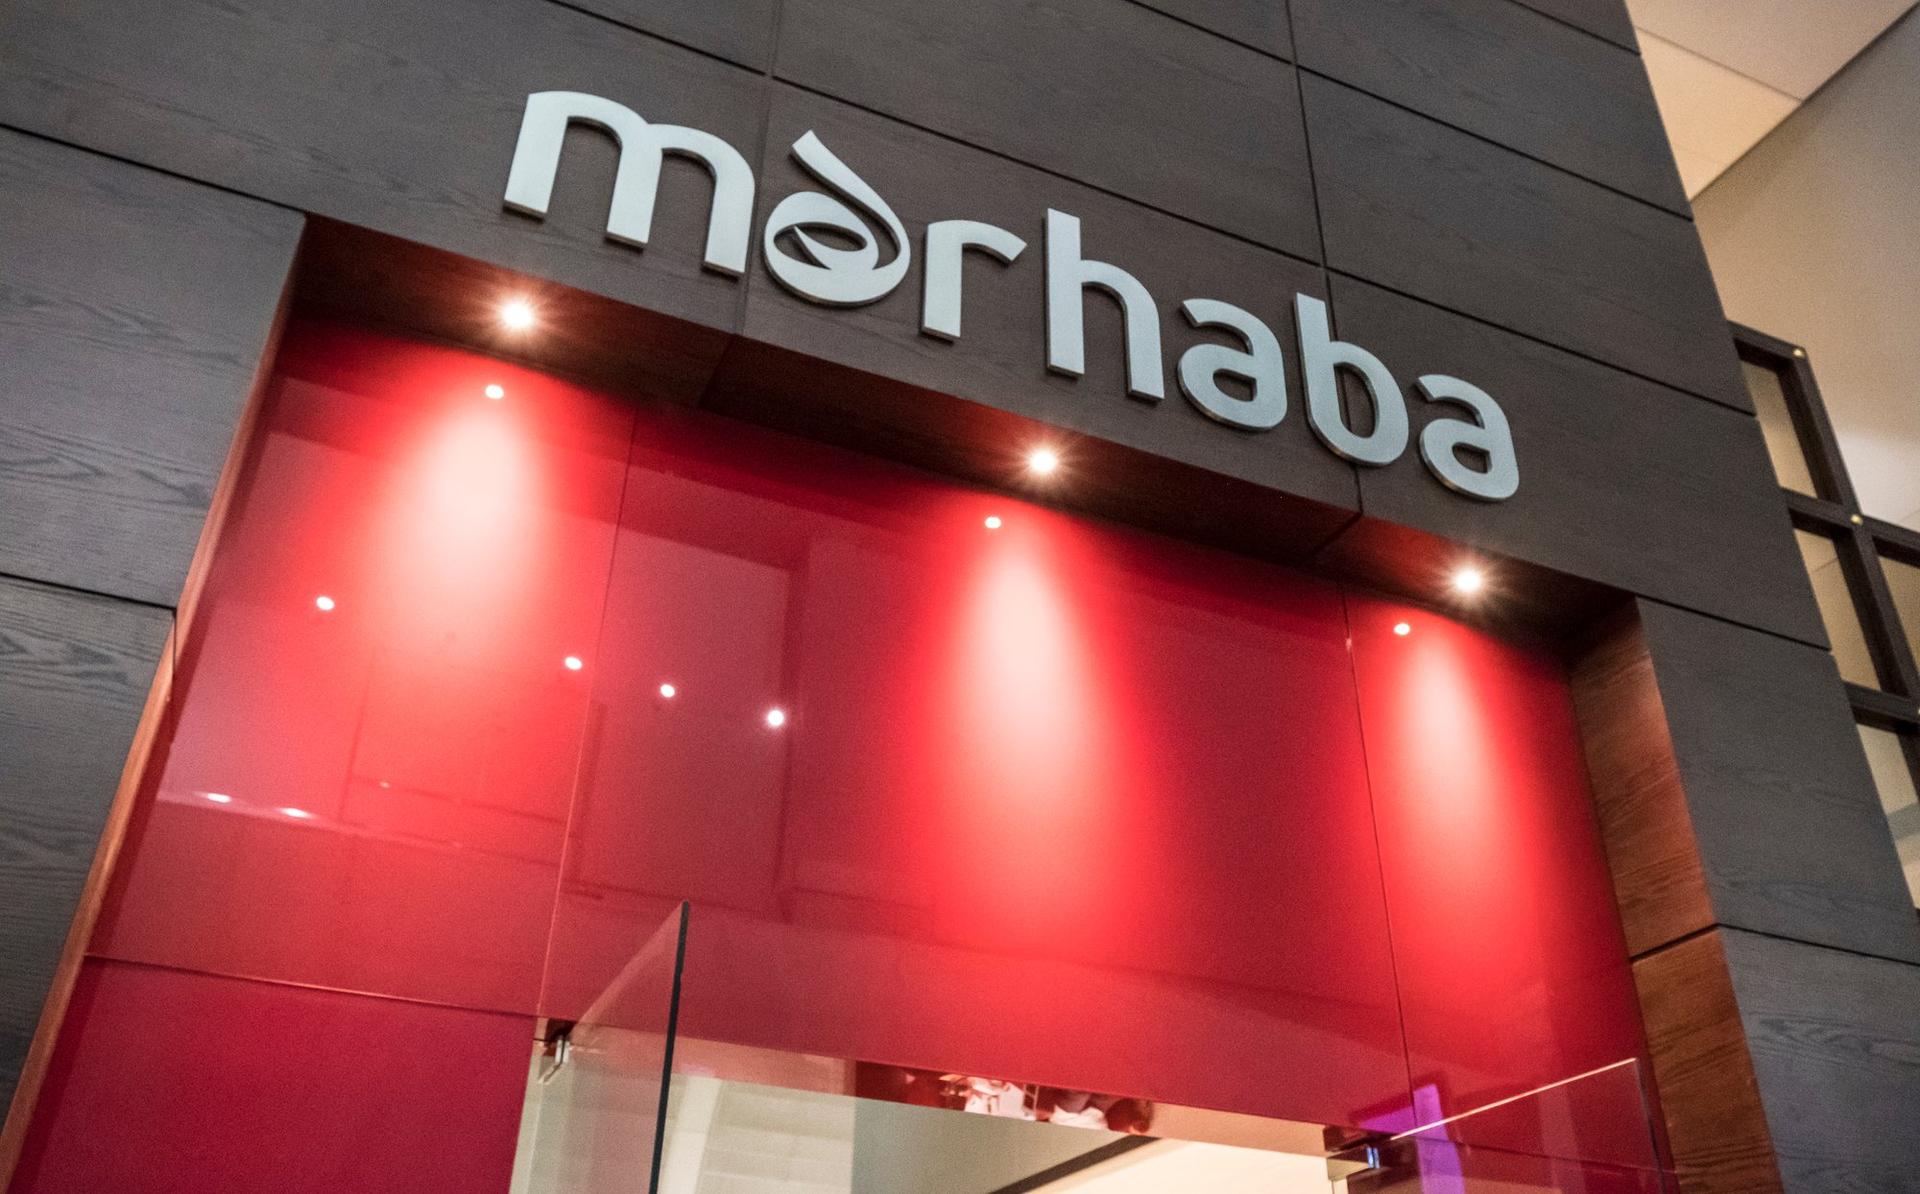 Marhaba Lounge image 40 of 64